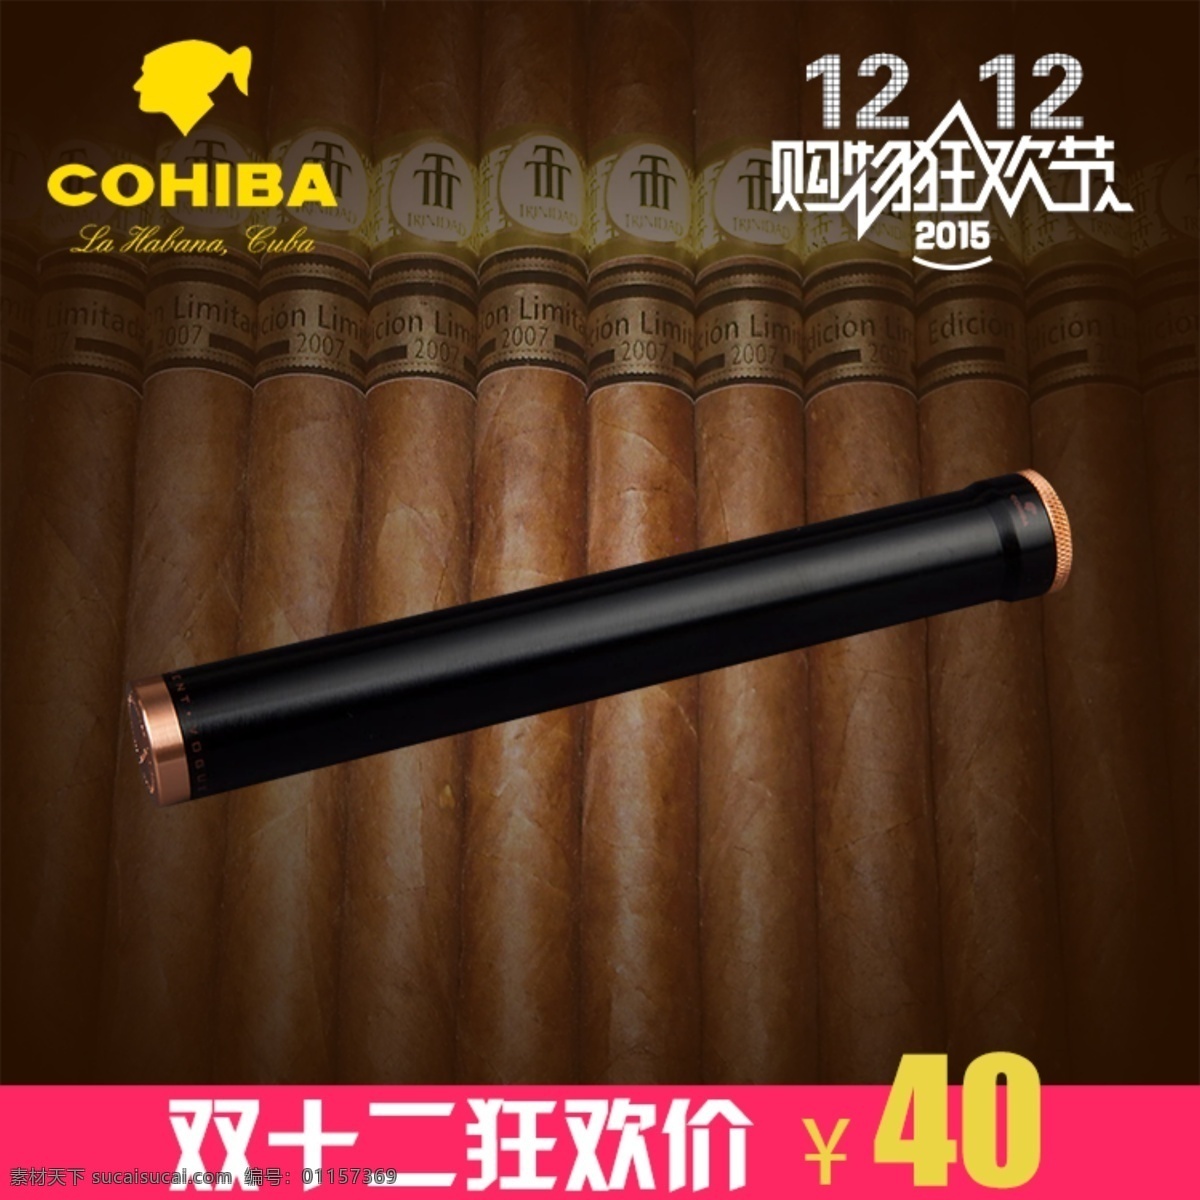 双十 二 淘宝网 雪茄 主 图 活动 logo 模板 设计素材 狂欢 价 字体 雪茄背景素材 保湿 2015 黑色